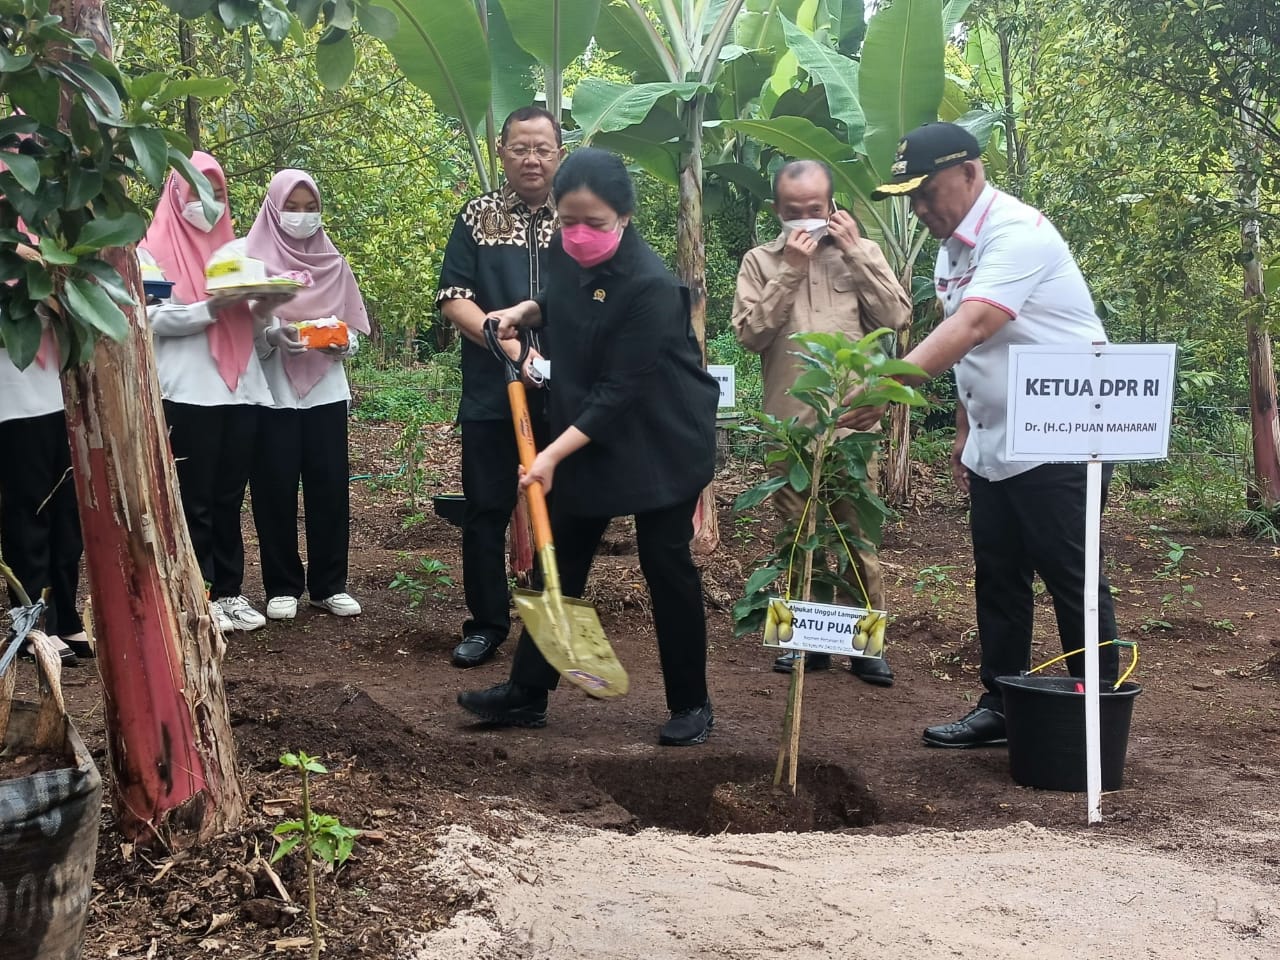 Kunker di Lamsel, Ketua DPR RI Tanam Pohon Alpukat Hingga Beri Bantuan